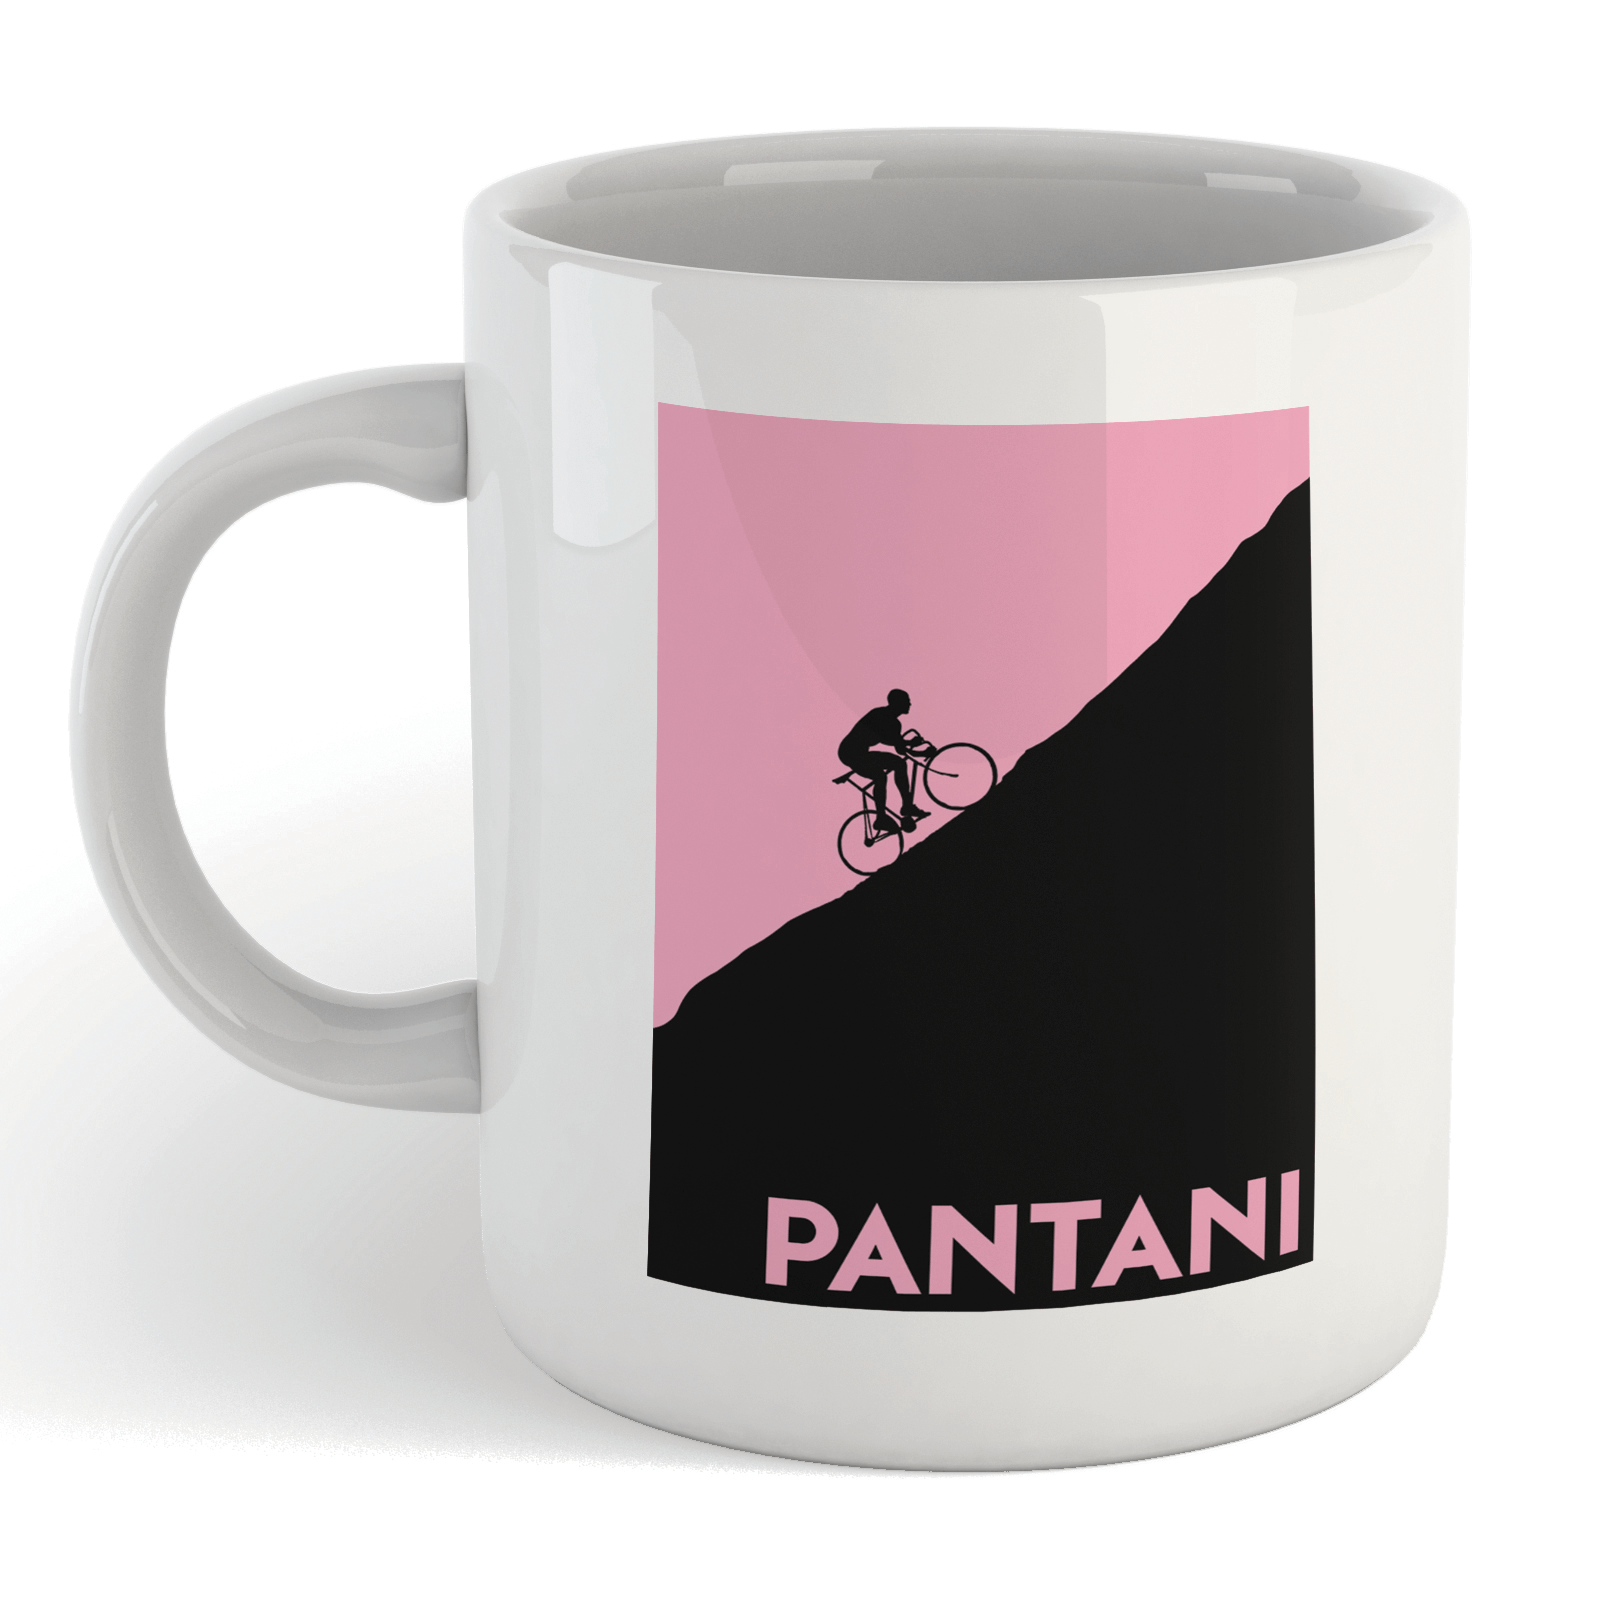 Pantani Mug